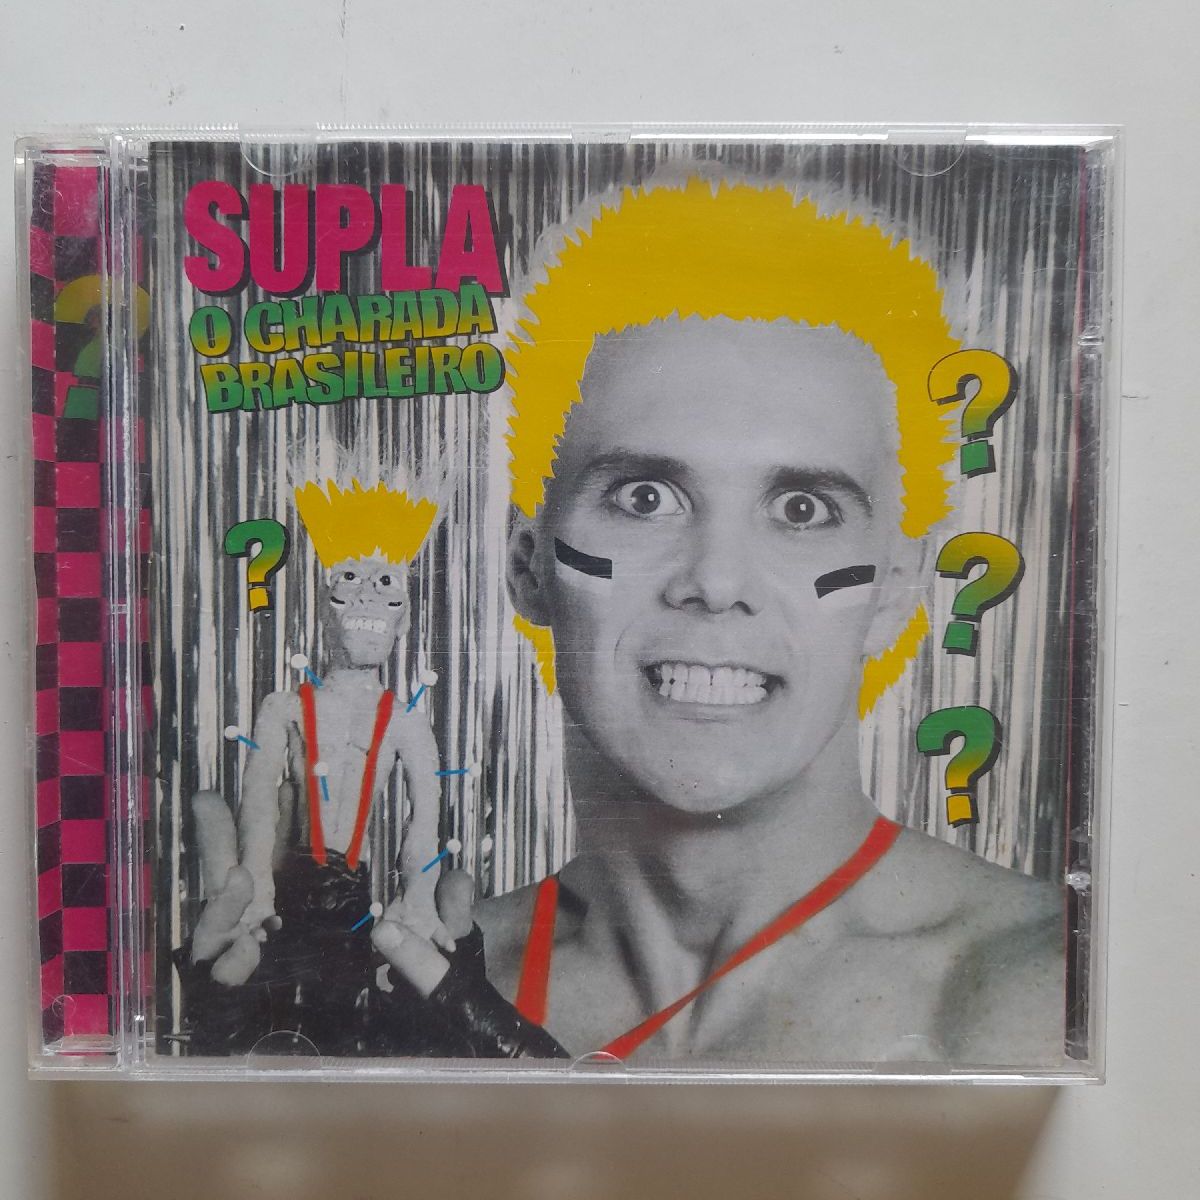 O Charada Brasileiro - Album by Supla - Apple Music